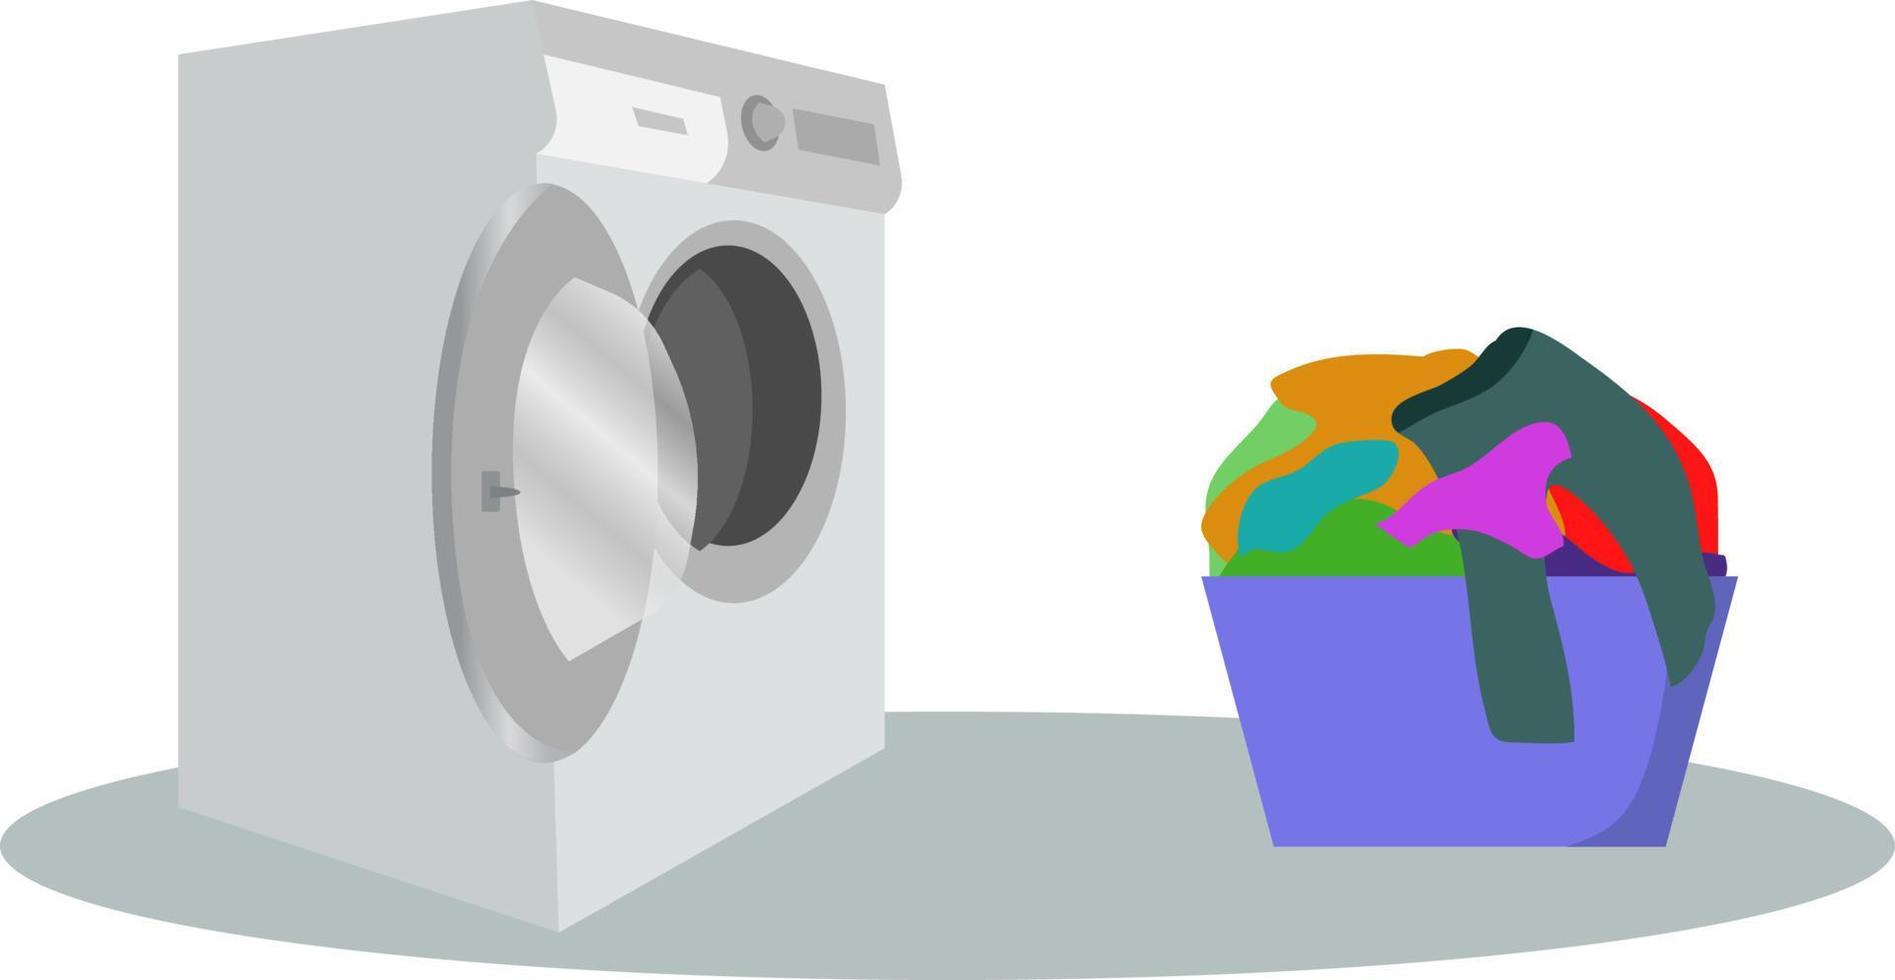 lavando máquina com cesta. plano estilo vetor ilustração, lavando máquina e lavanderia cesta ilustração máquina de lavar com sujo roupas esboço ilustração.